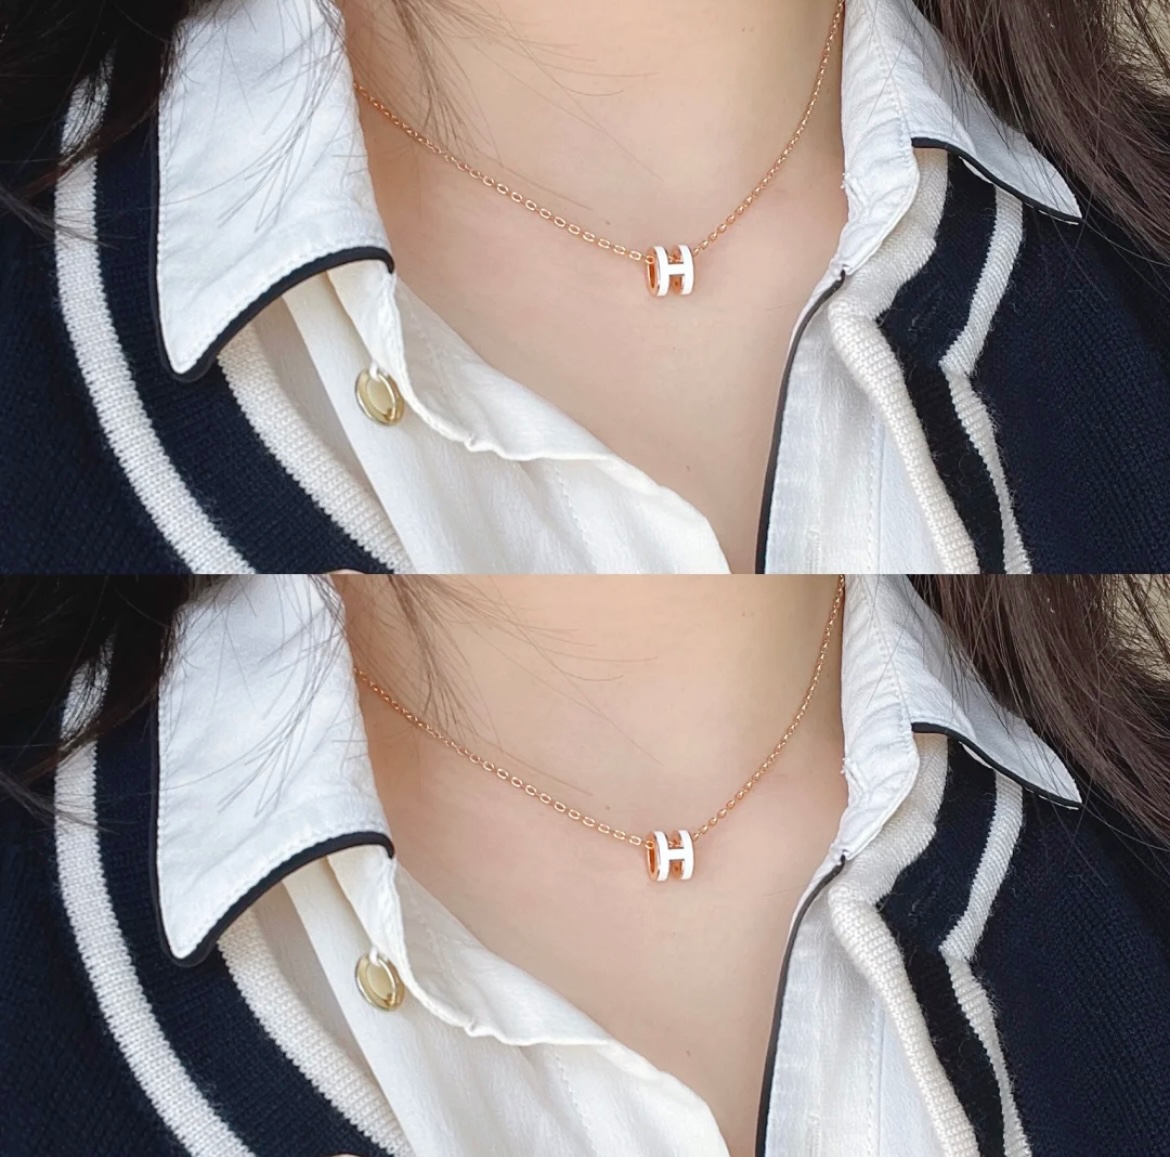 Hermes Jewelry Necklaces & Pendants White Mini